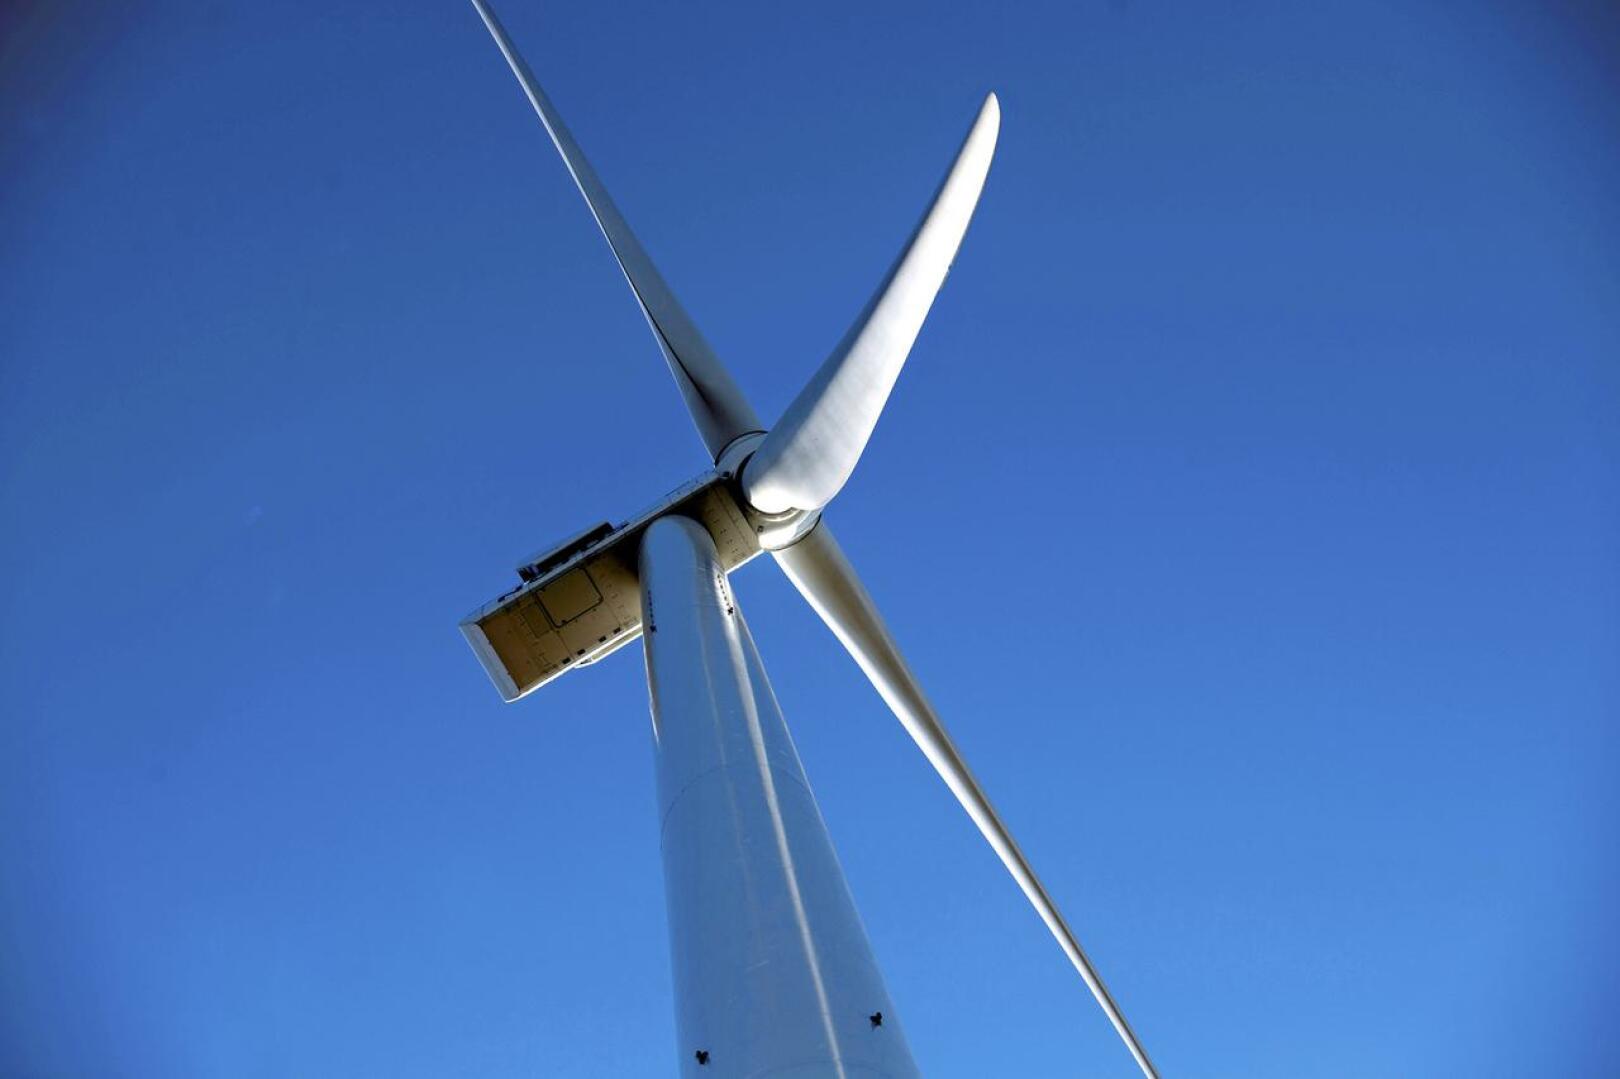 Keski-Pohjanmaalla tehdään järjestelmällistä selvitystyötä voimakkaasti kasvavan tuulivoima-alan työvoimatarpeista.